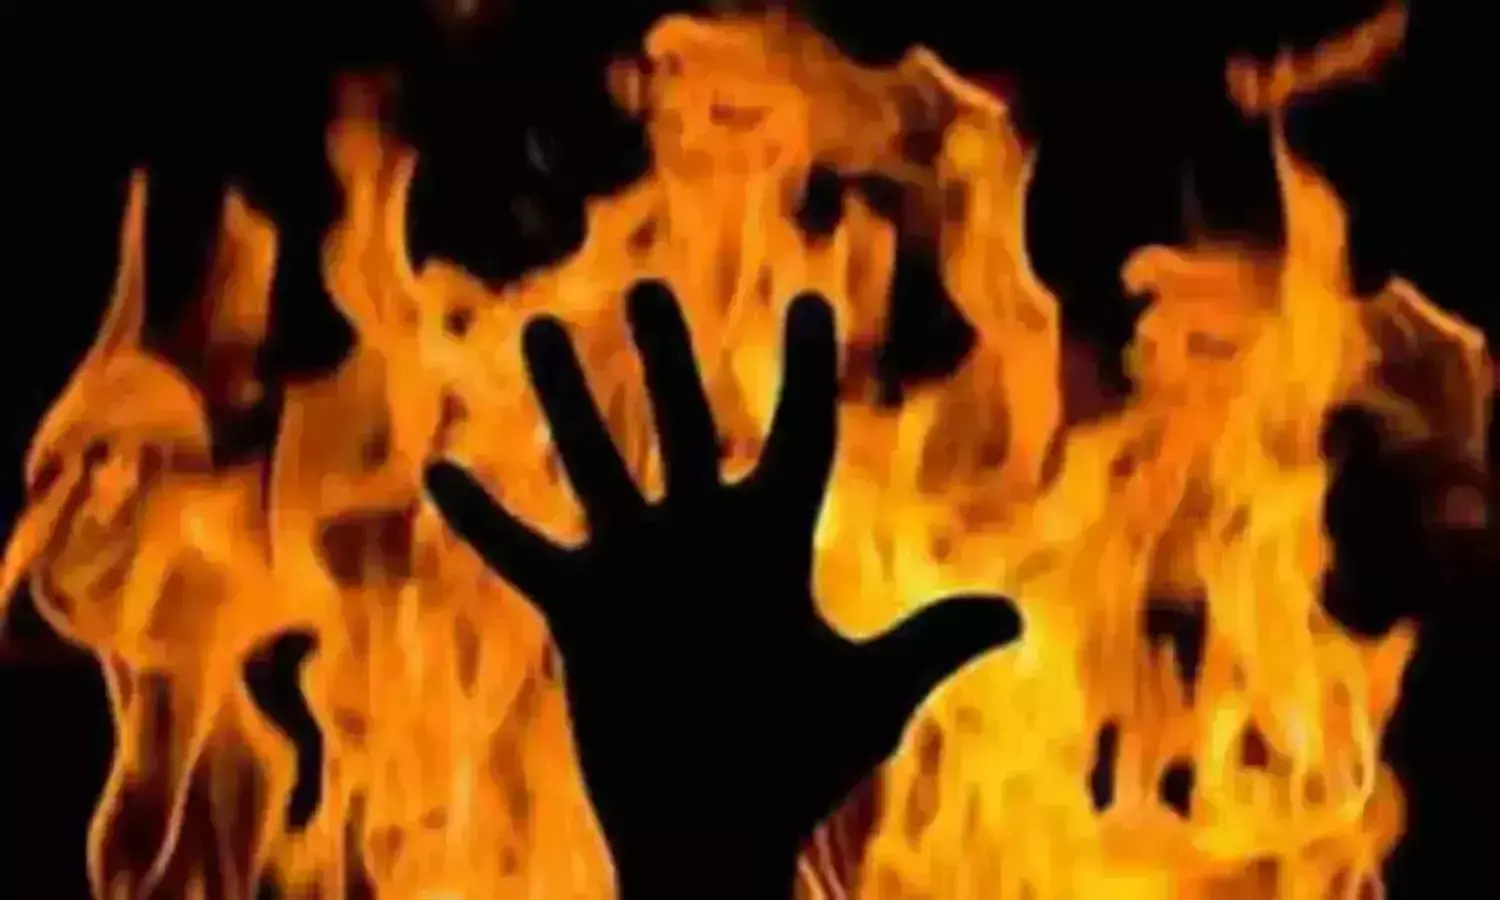 सोनिया विहार में रहने वाली नौवीं के छात्र ने खुद को लगाई आग